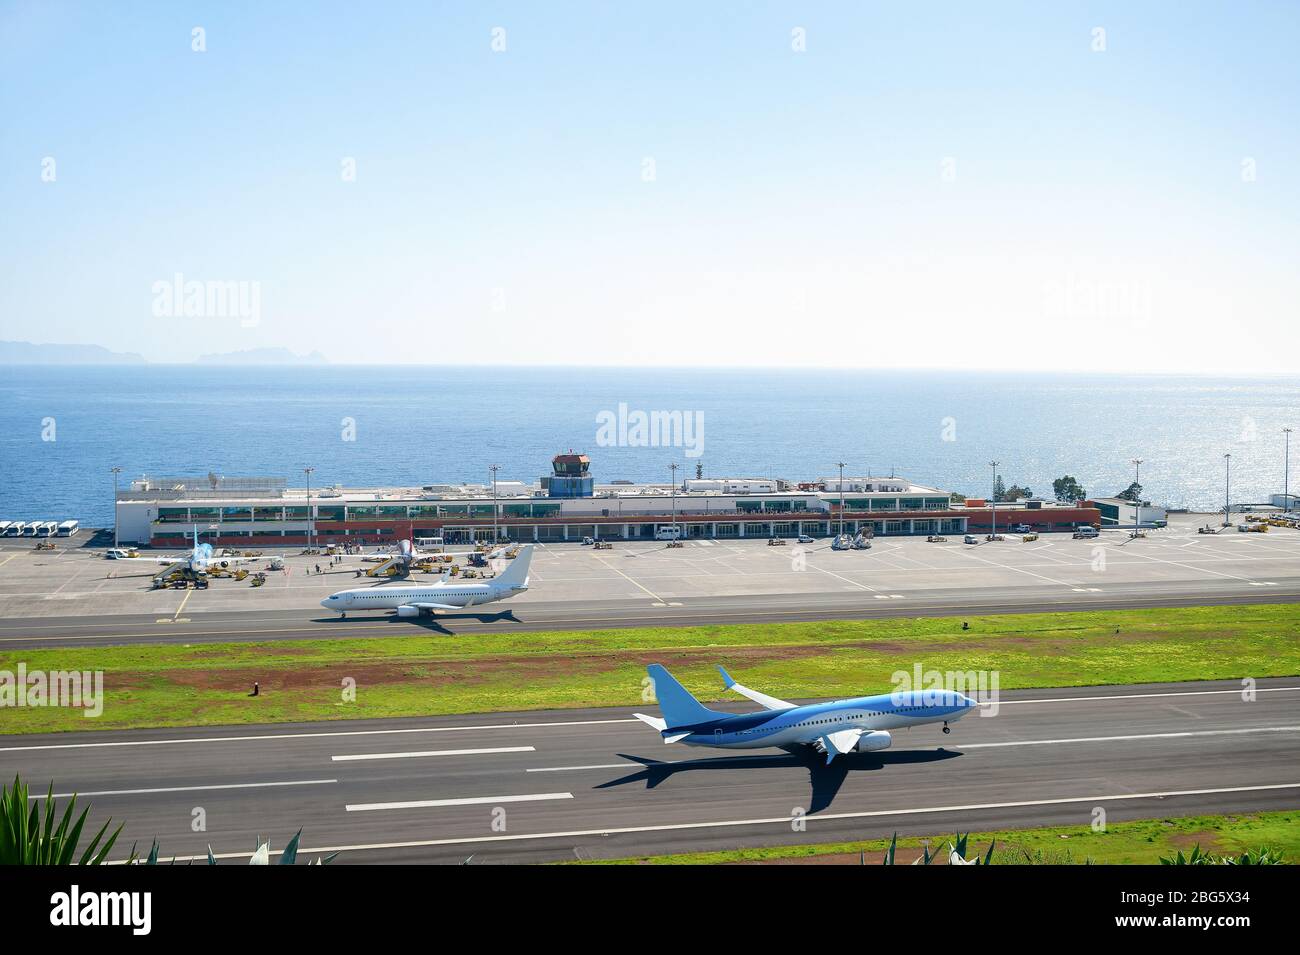 Vista aérea de aviones despegando de la pista de aterrizaje en el aeropuerto internacional de Madeira, aviones por construcción de terminales y paisaje marino en el fondo, Portugal Foto de stock